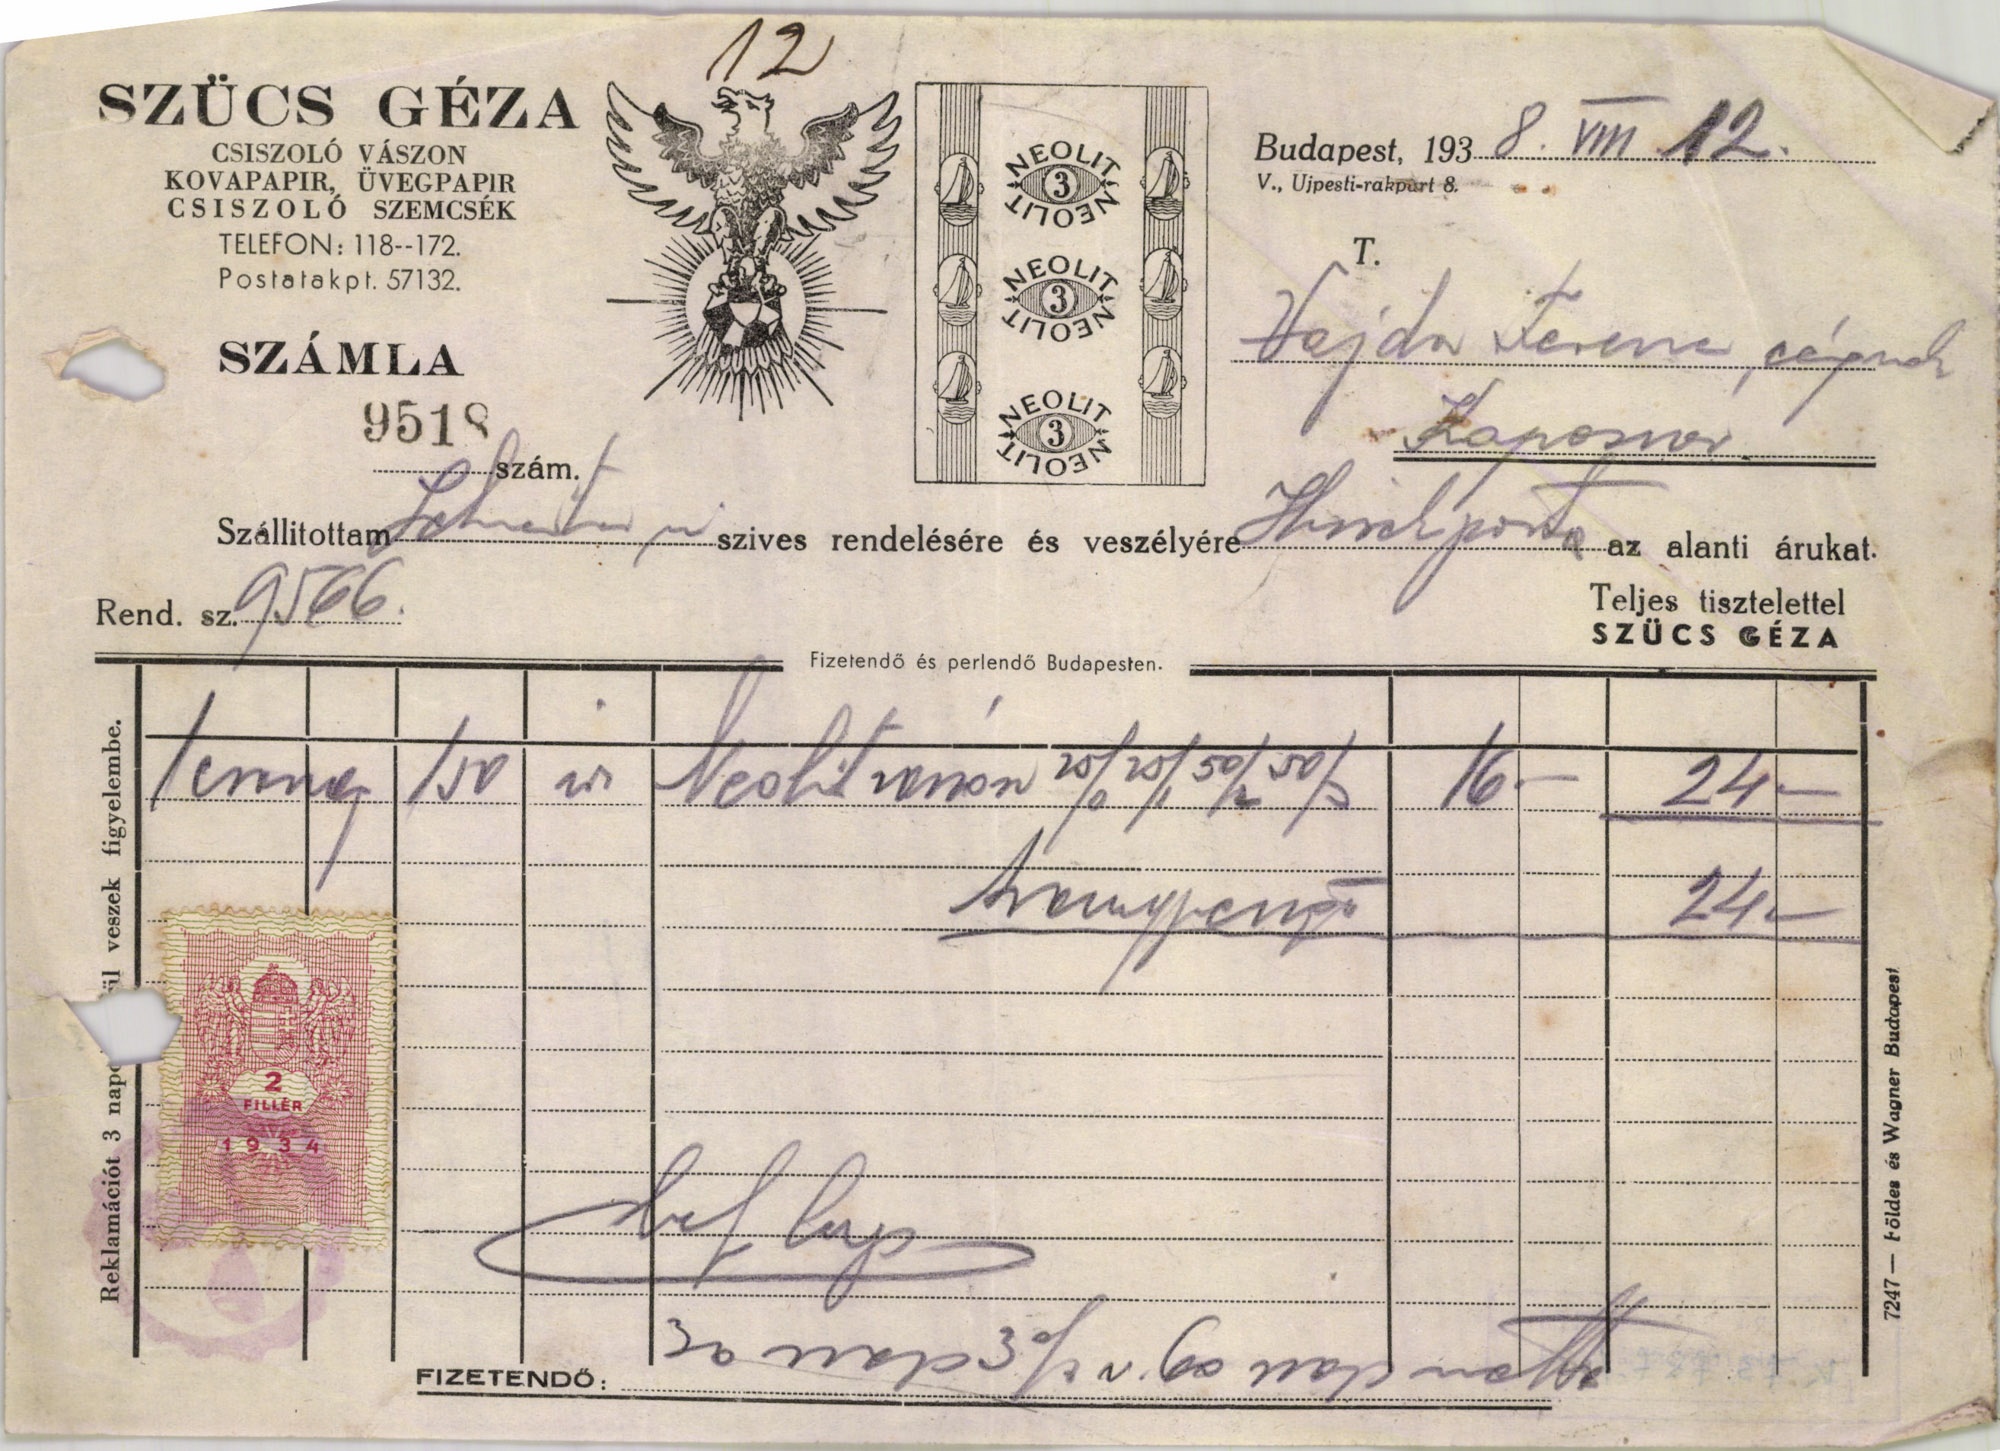 Szücs Géza csiszoló vászon, kovapapir, üvegpapir, csiszoló szemcsék (Magyar Kereskedelmi és Vendéglátóipari Múzeum CC BY-NC-SA)